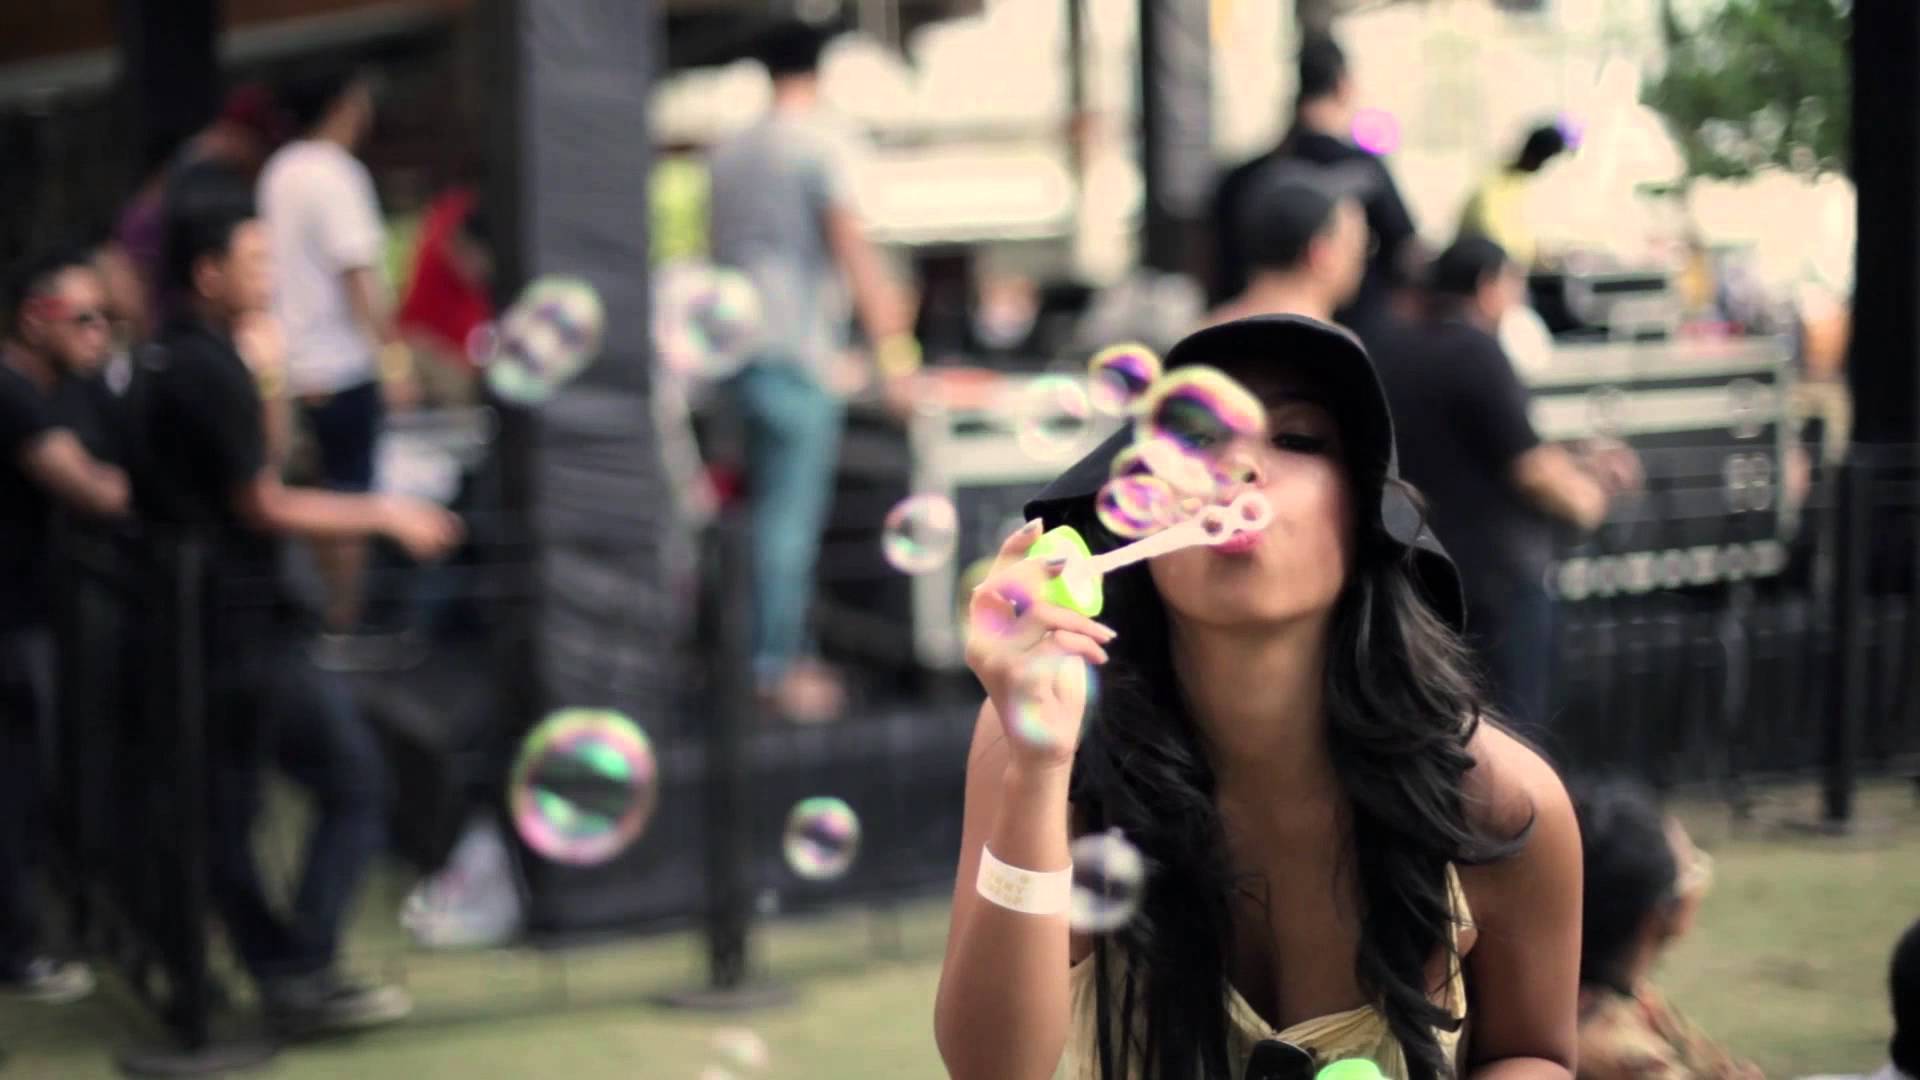 Bubbles! 'Nuff said.